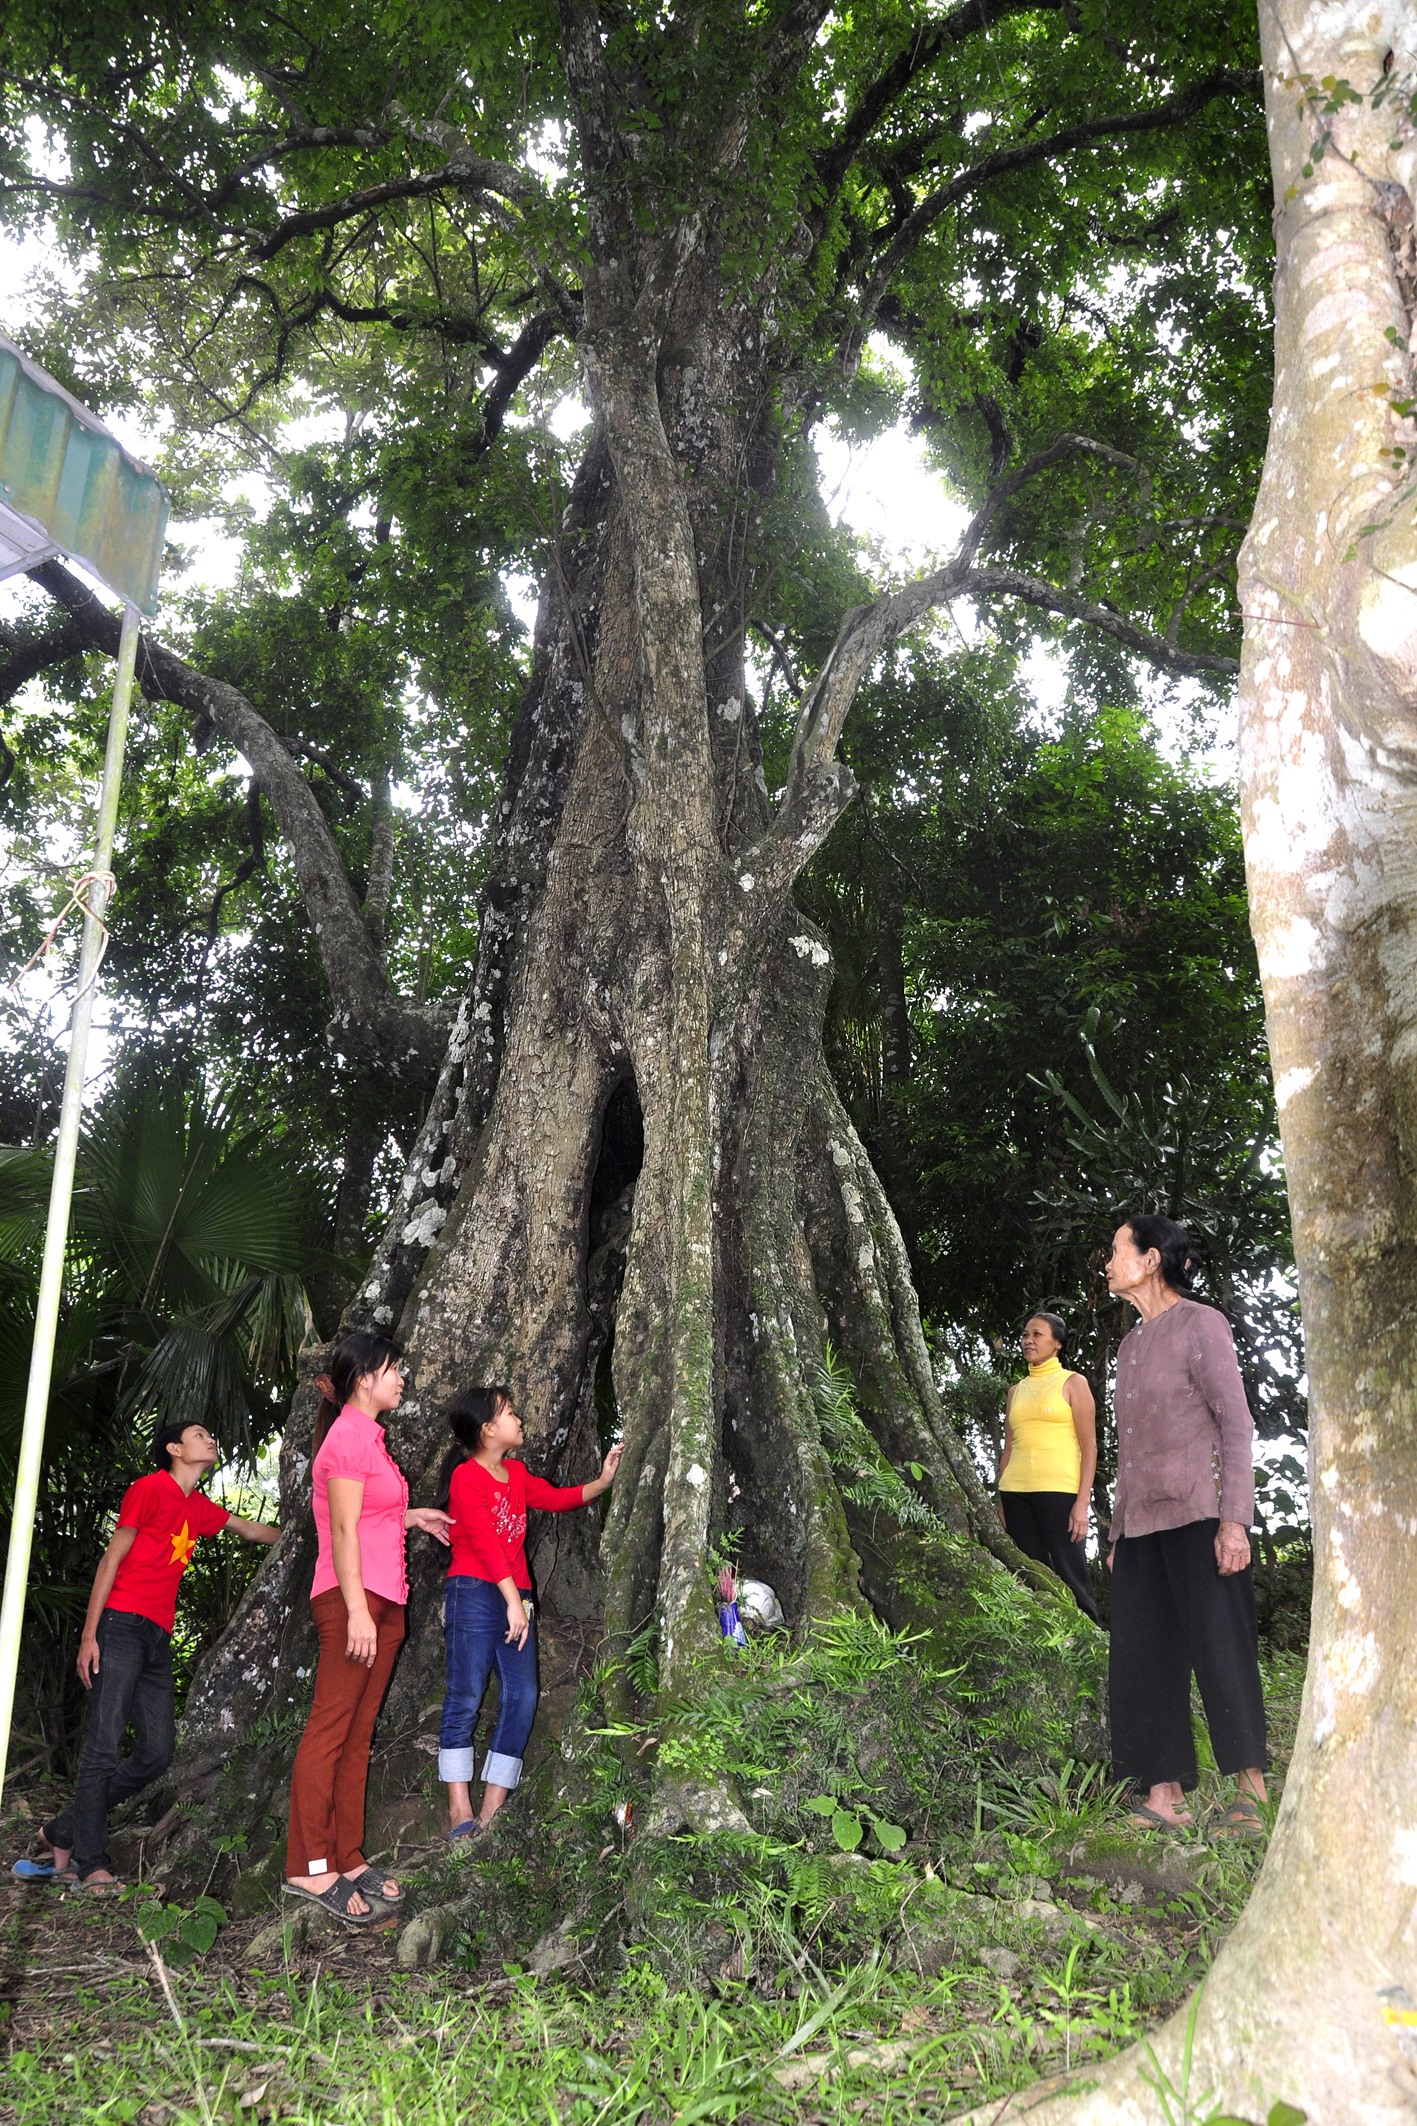 Cây thị cổ nằm trong khuôn viên của gia đình chị Nguyễn Thị Hương, thôn Kim Sơn, là cổ thụ được nhiều người dân và du khách yêu thích, thường xuyên tìm đến thưởng lãm.